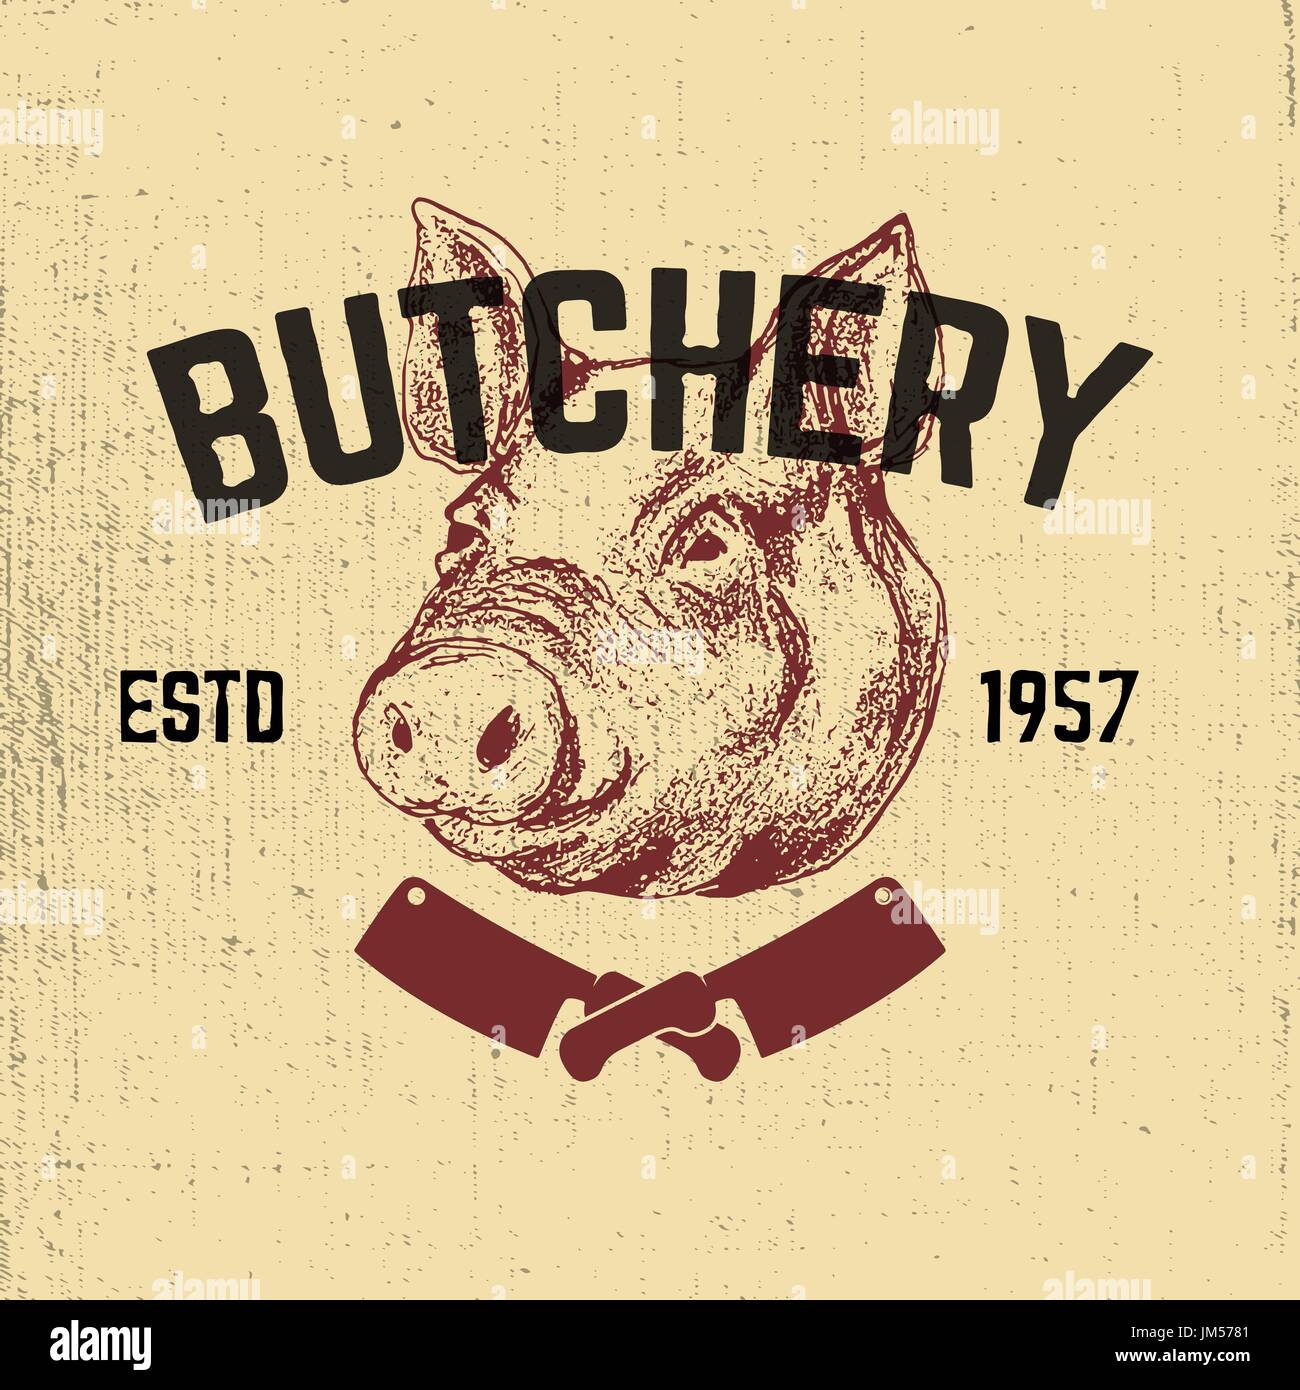 Pork. Butchery. Hand drawn pig head on grunge background. Design elements for restaurant menu, poster, emblem, sign. Vector illustration. Stock Vector